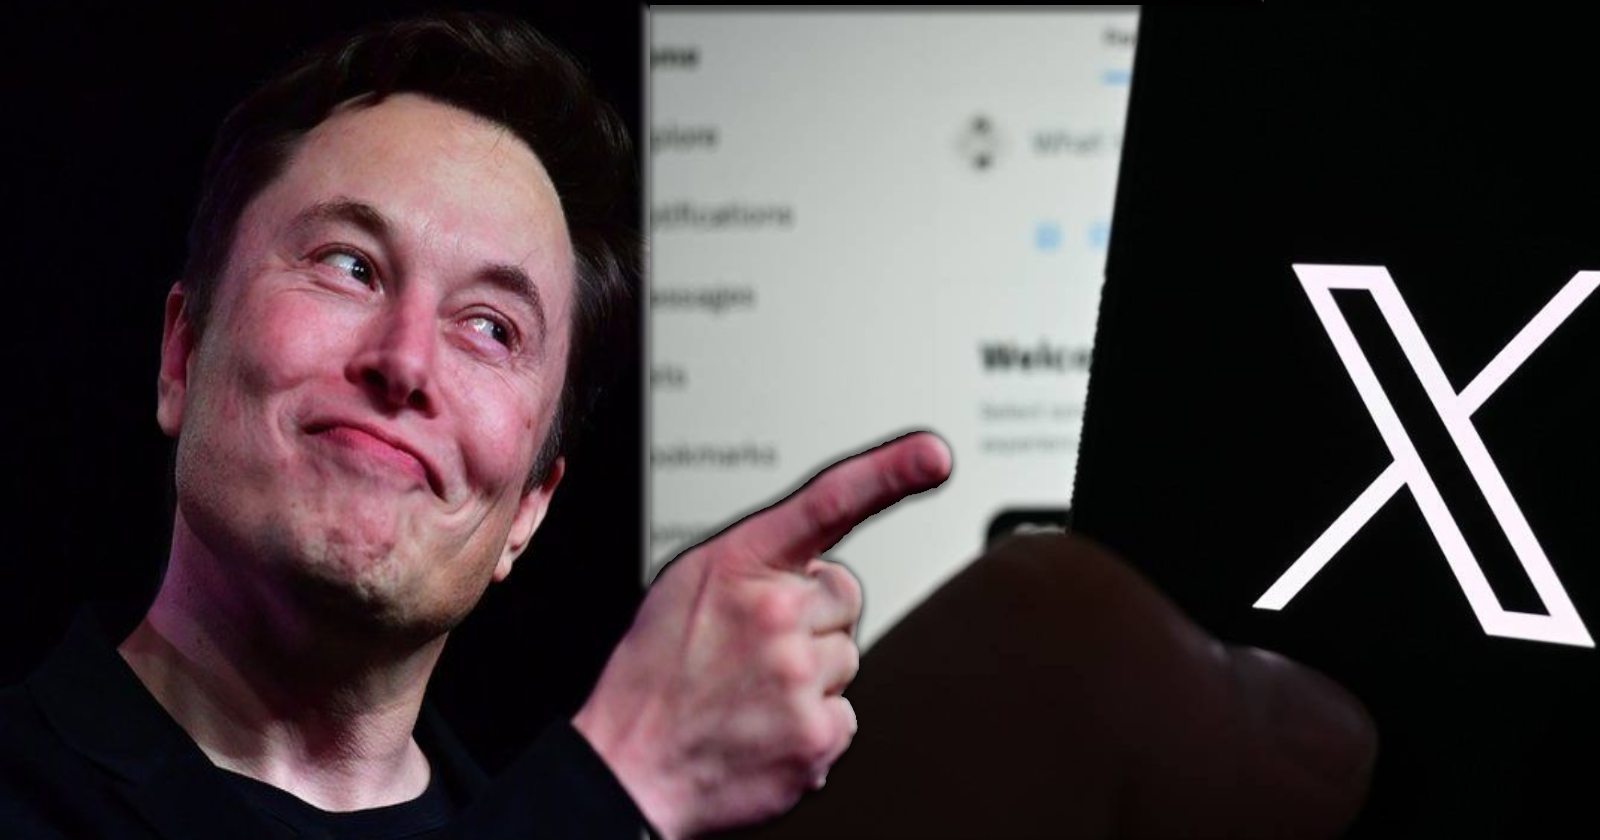 Elon Musk, X mobil arama sonuçları, Instagram mobil arama sonuçları, facebook mobil arama sonuçları